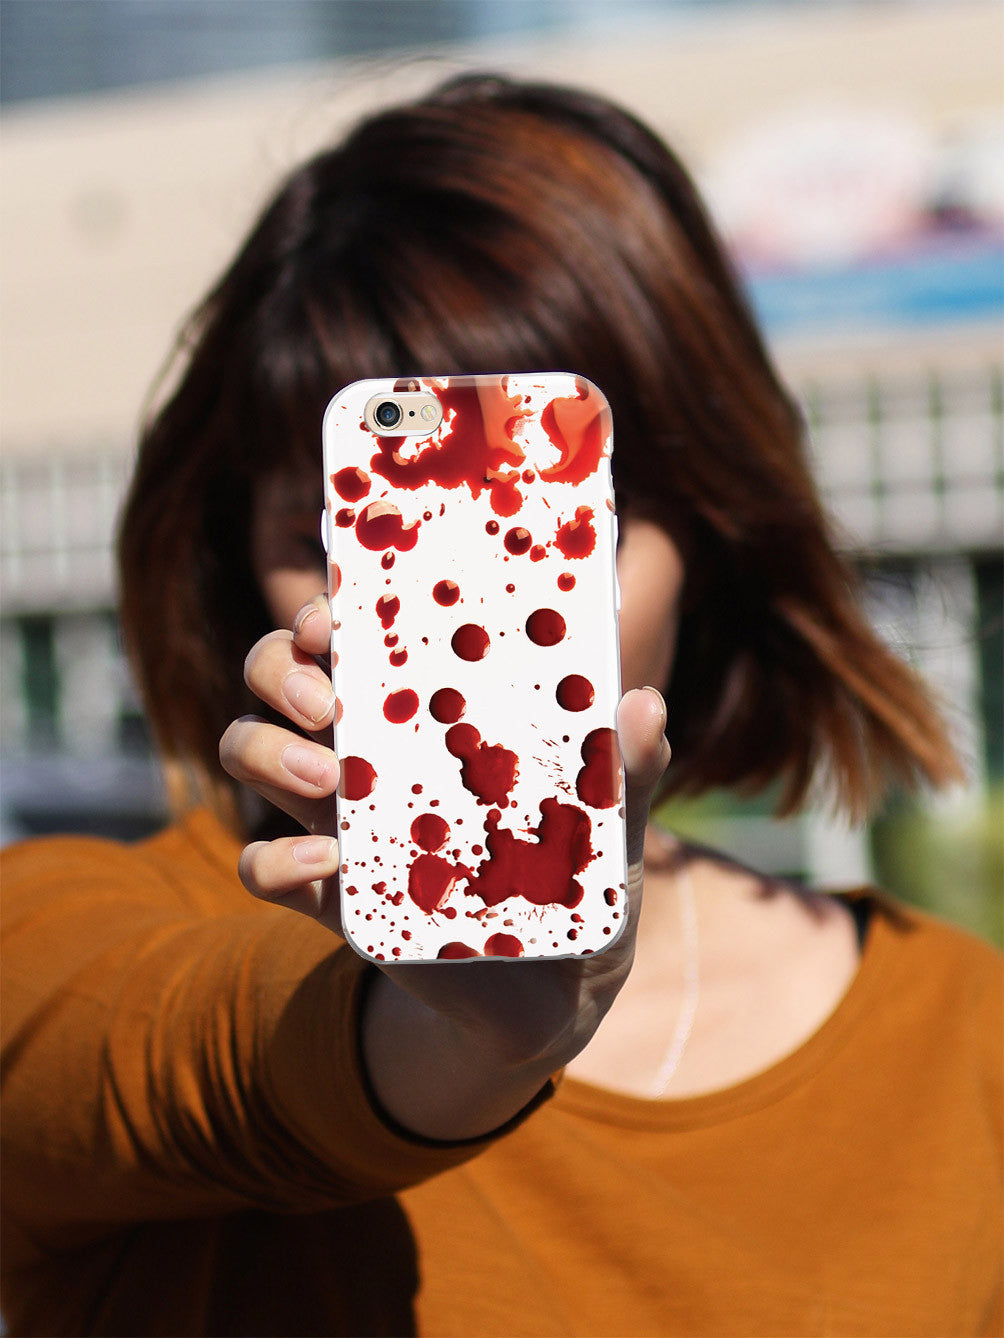 Blood Splatter Case